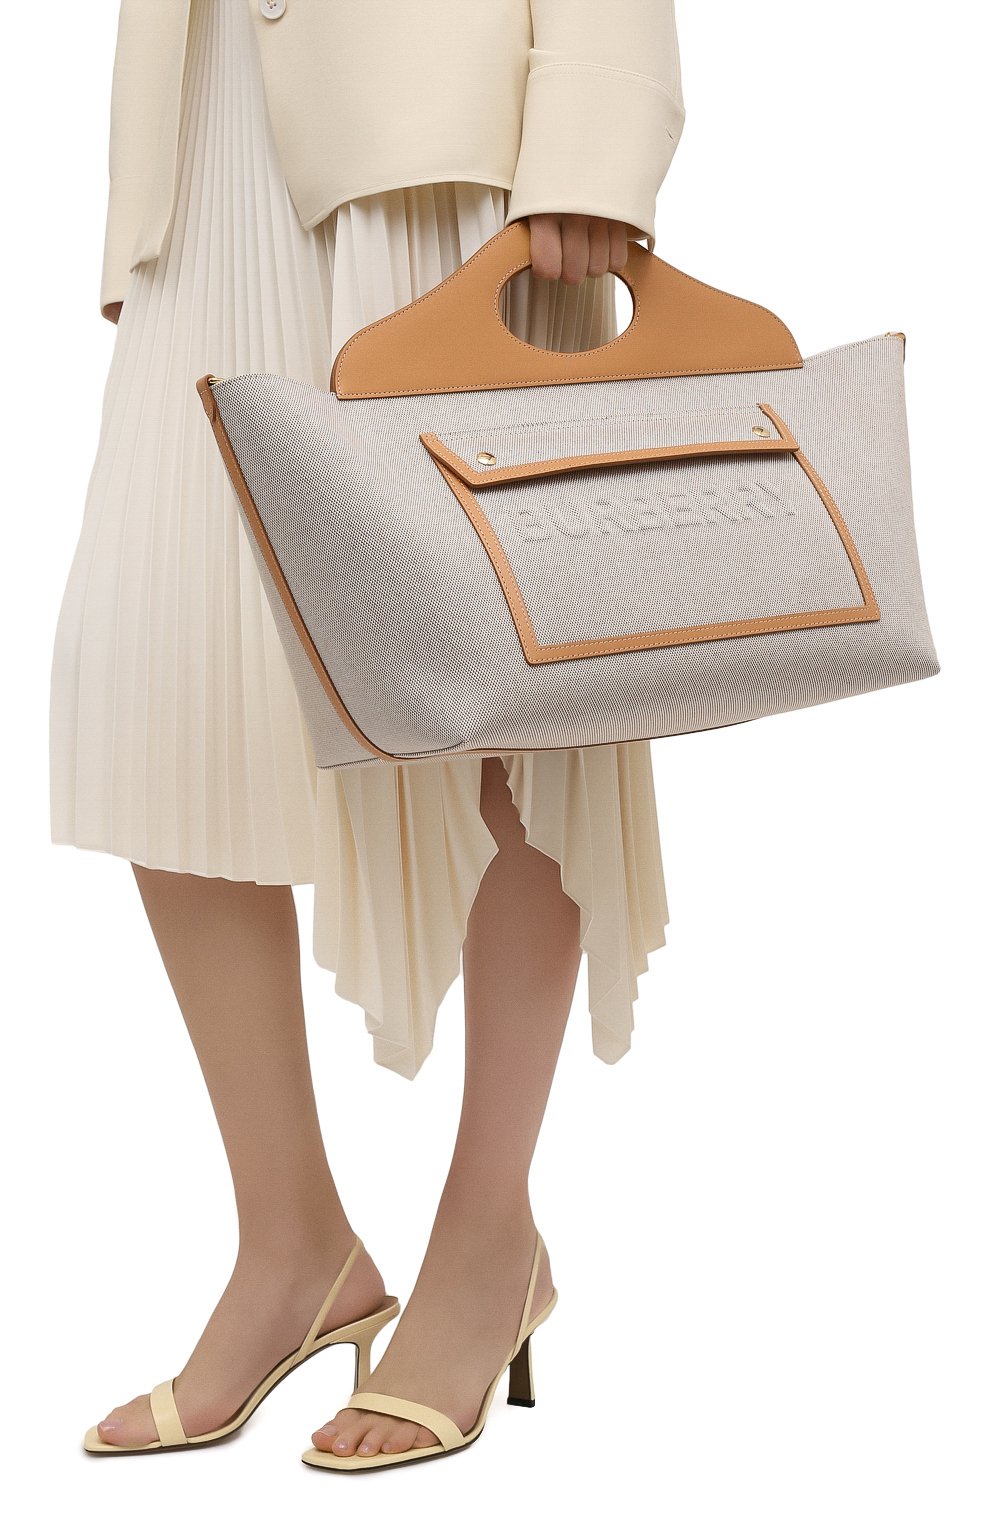 Женская сумка pocket cabas medium BURBERRY бежевого цвета, арт. 8039080 | Фото 2 (Сумки-технические: Сумки через плечо, Сумки top-handle; Размер: medium; Ремень/цепочка: На ремешке; Материал: Текстиль)